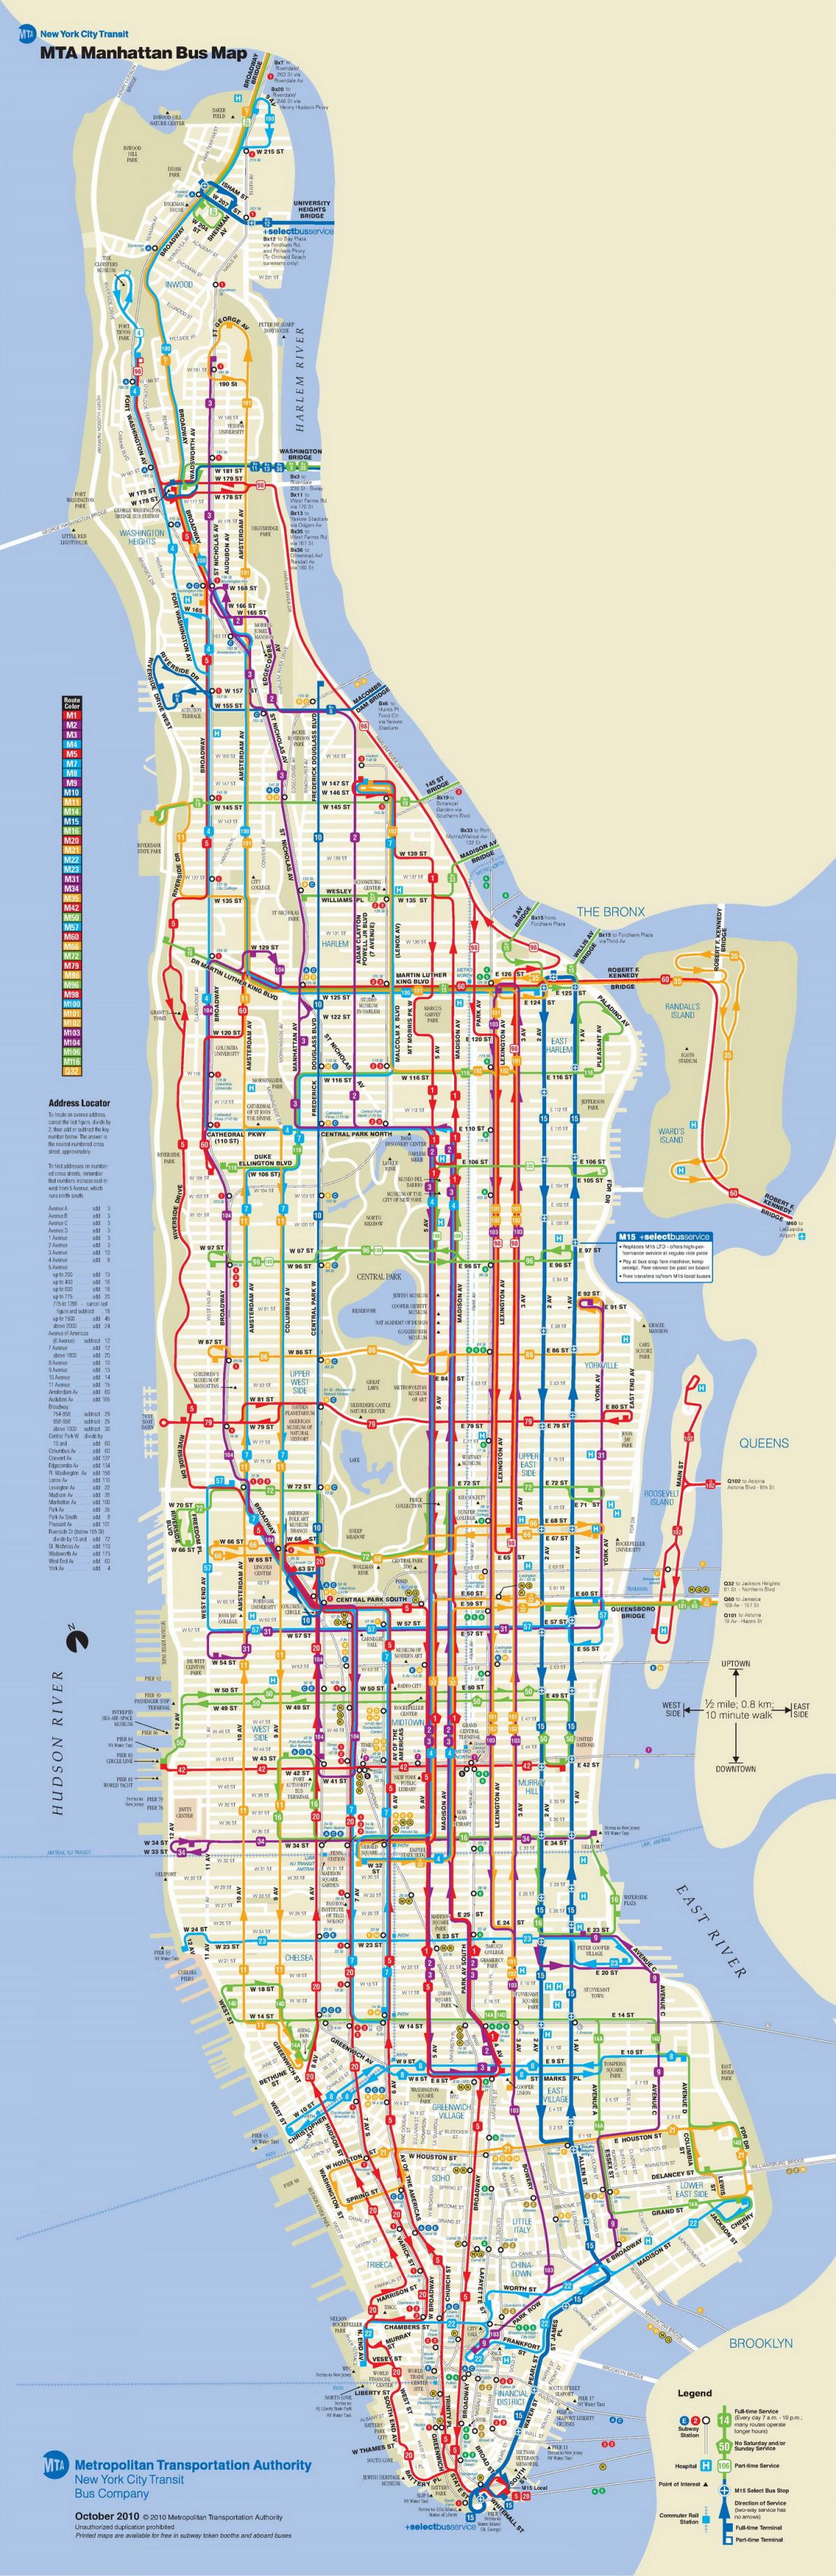 Manhattan bus mapa na may mga hinto